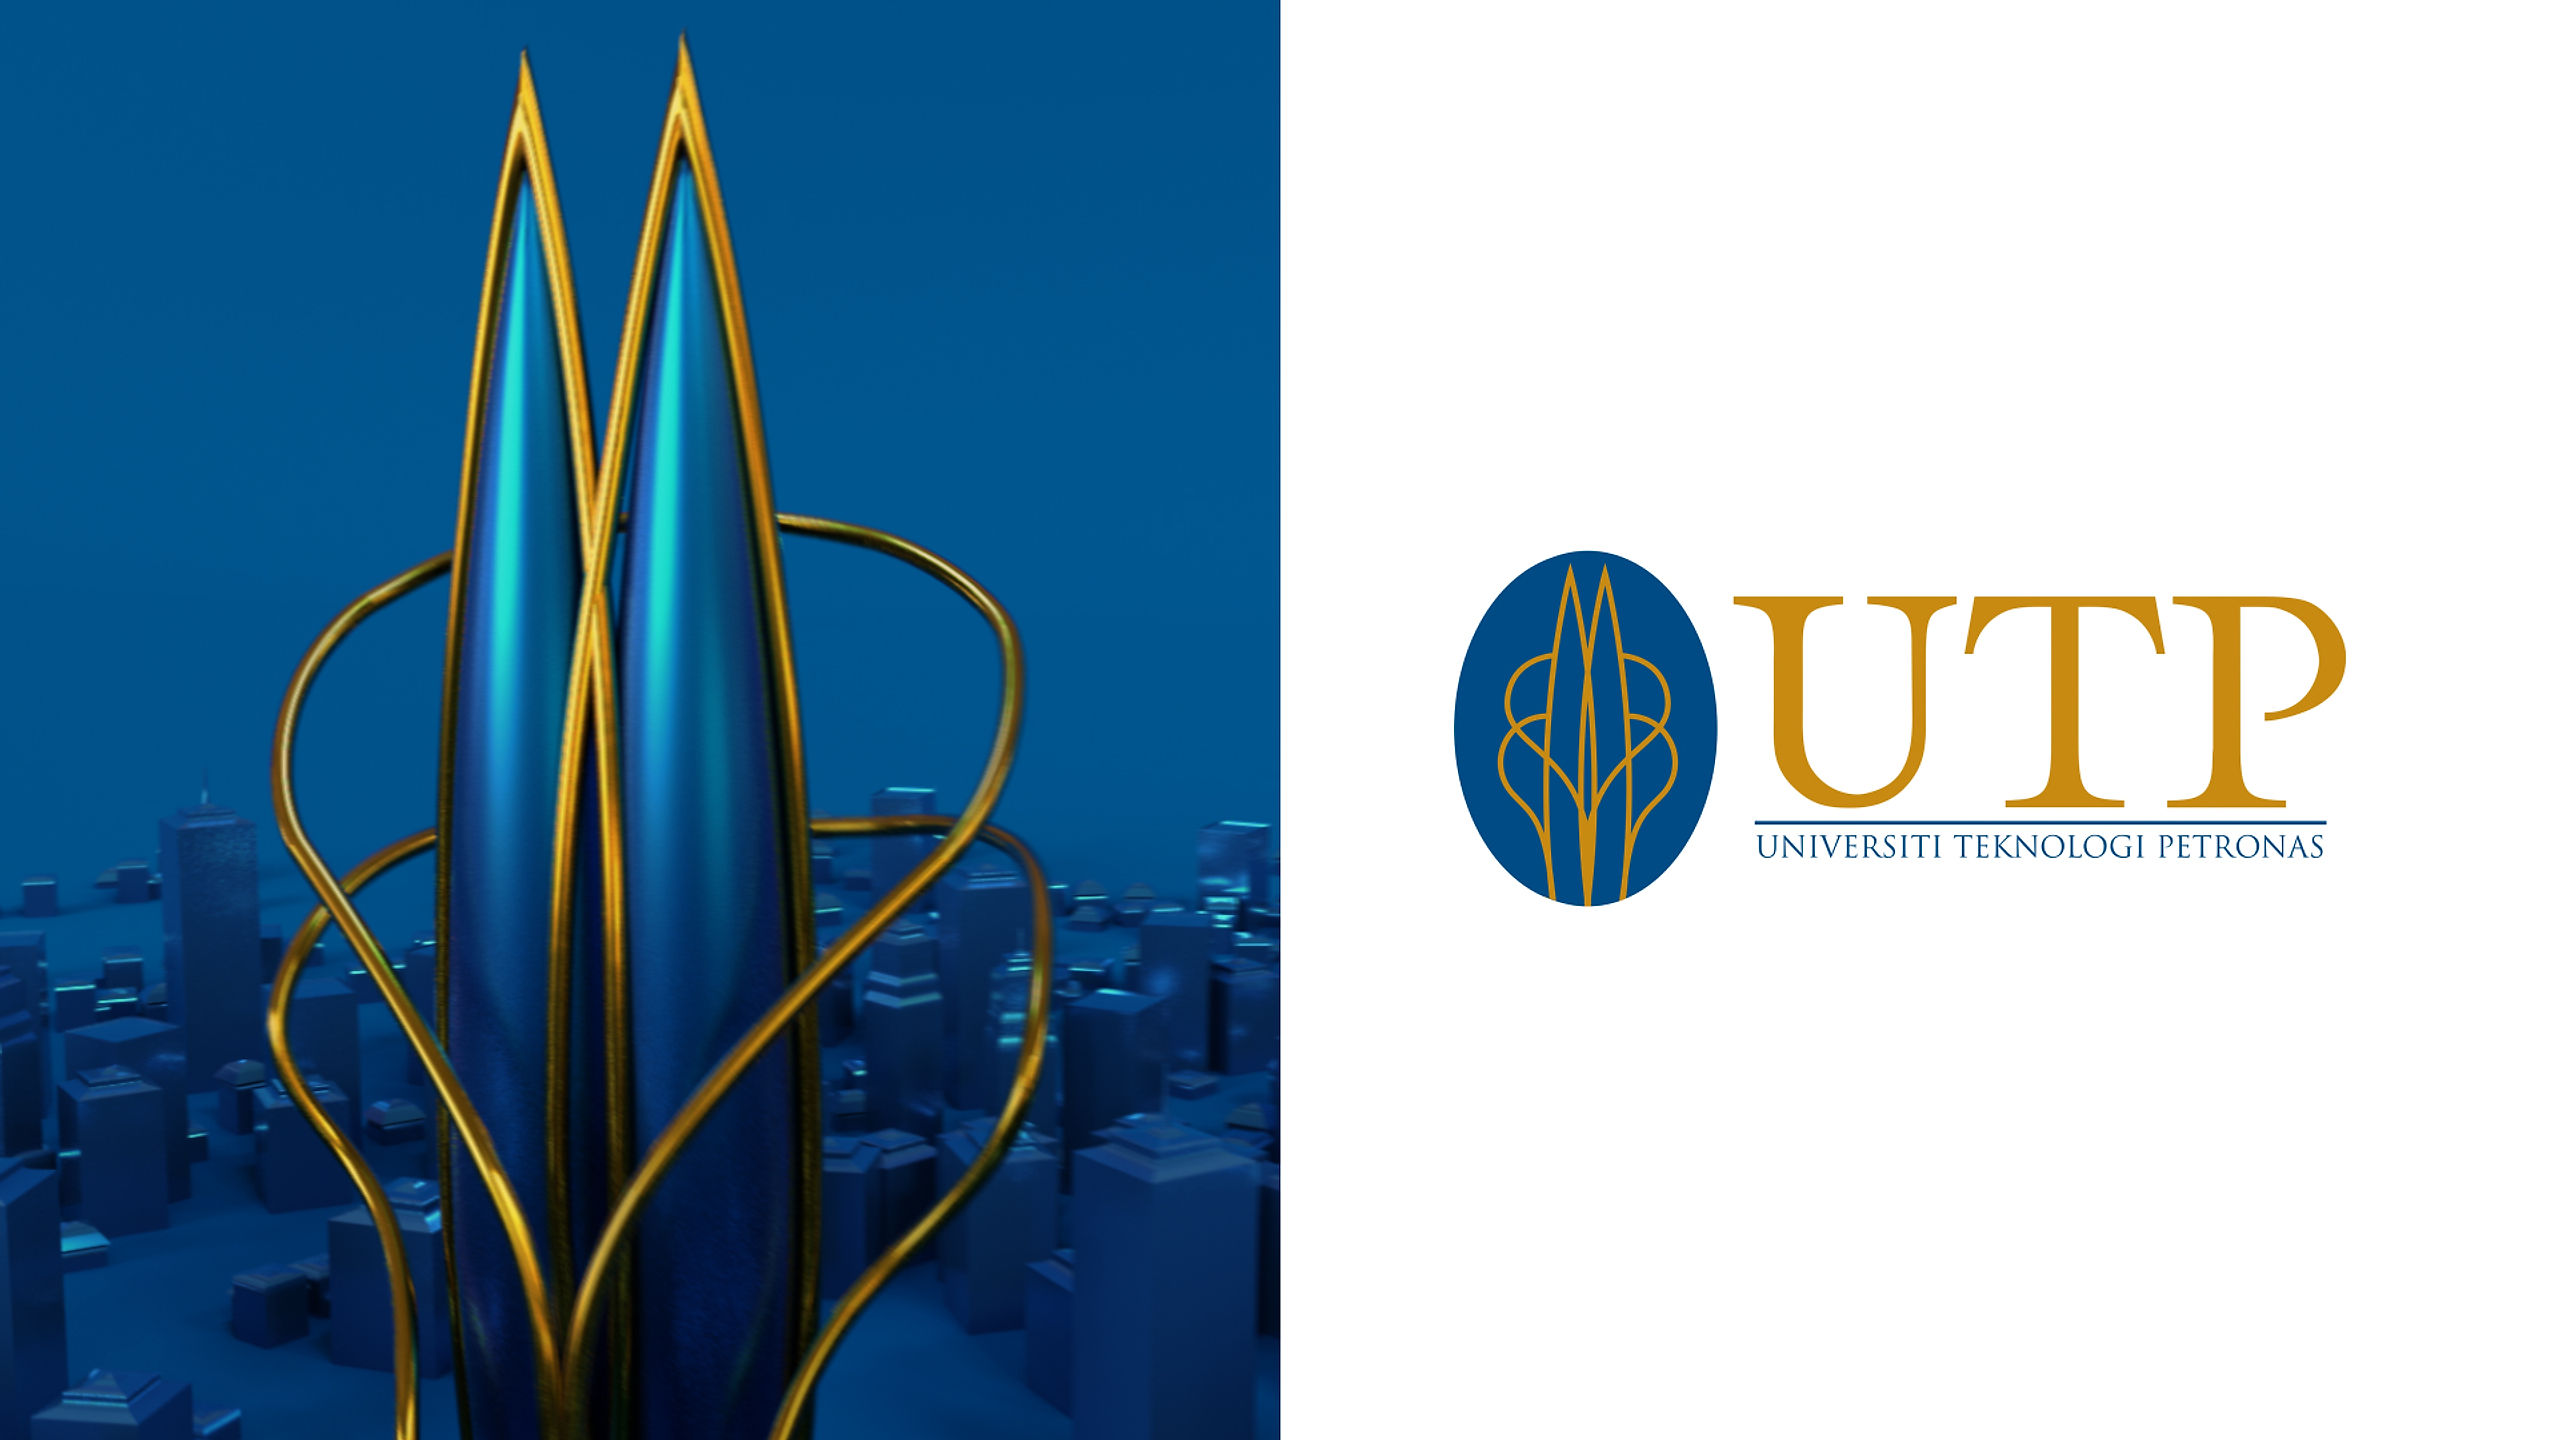 Universiti Teknologi Petronas: Logo Reveal